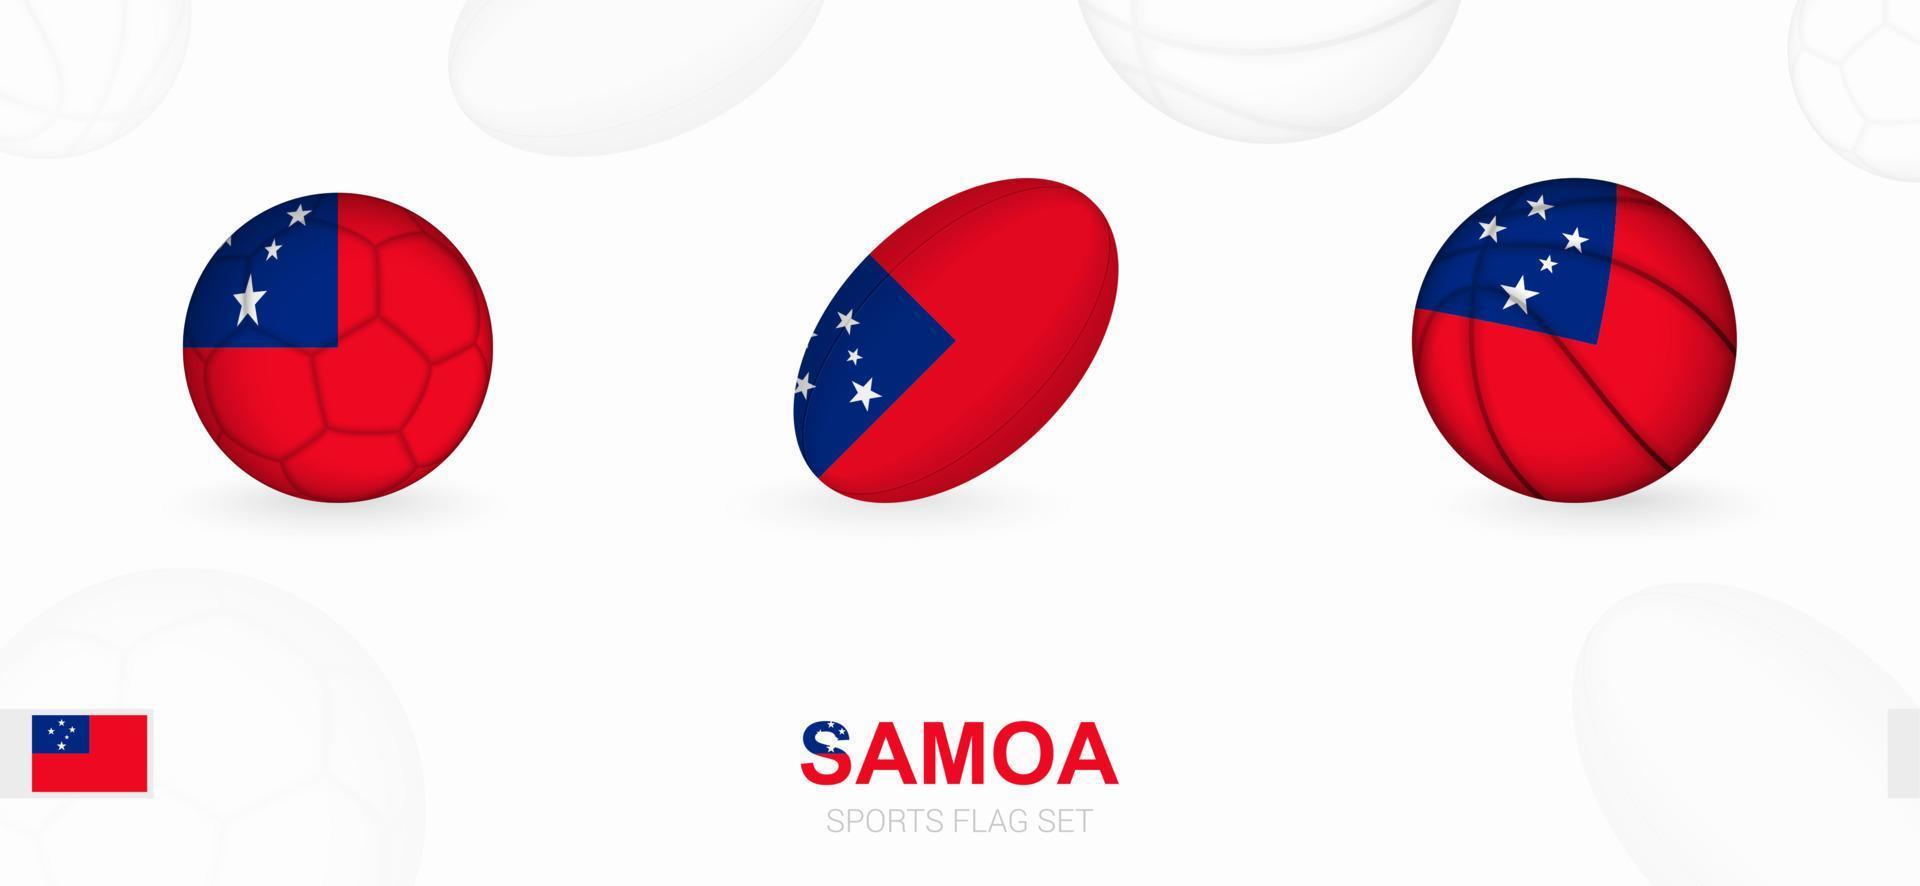 sport- pictogrammen voor Amerikaans voetbal, rugby en basketbal met de vlag van samoa. vector